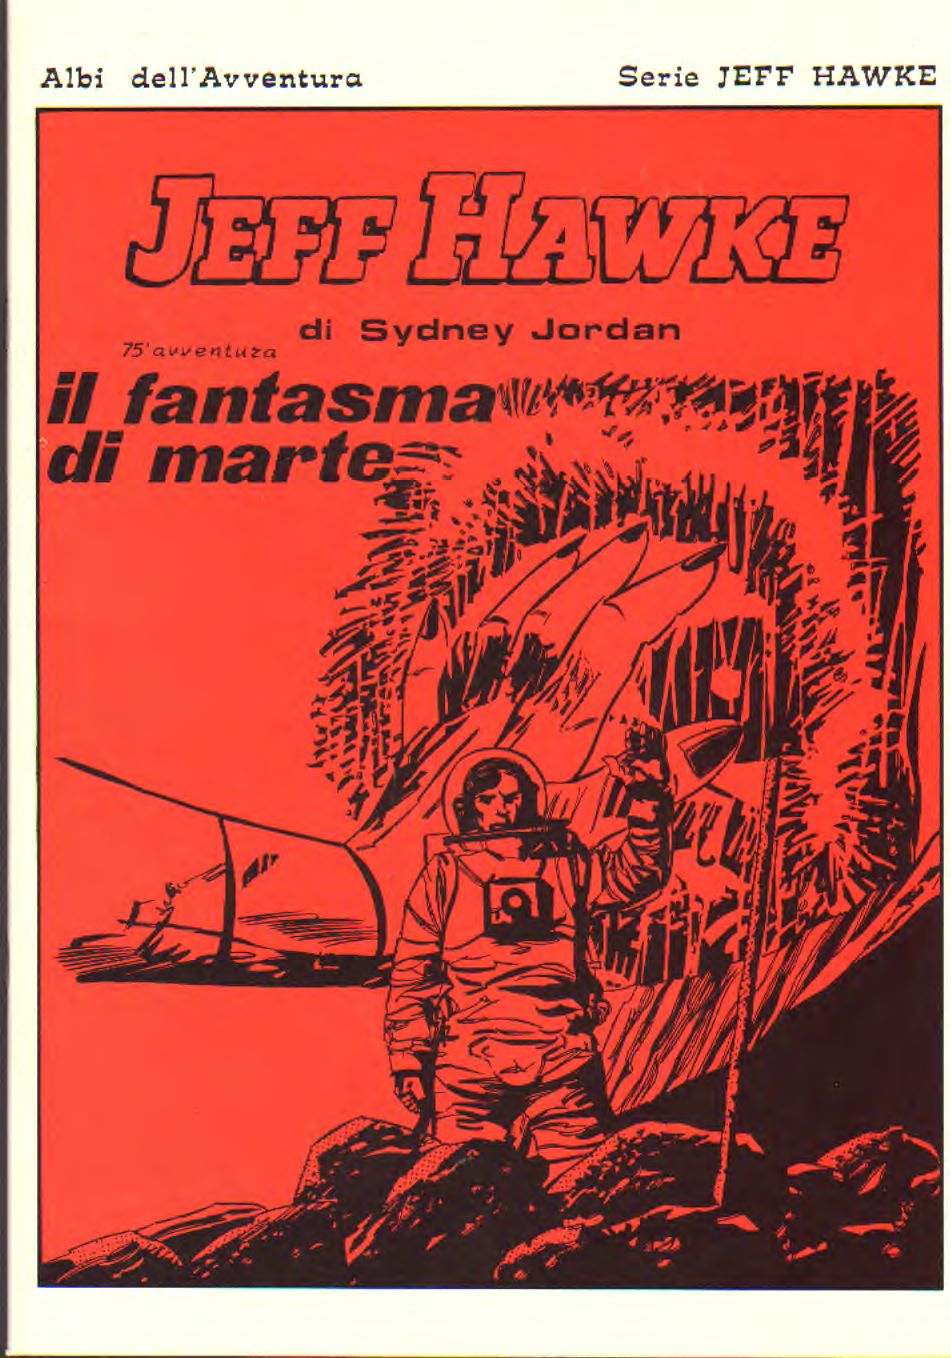 Jeff Hawke - 75 avventura